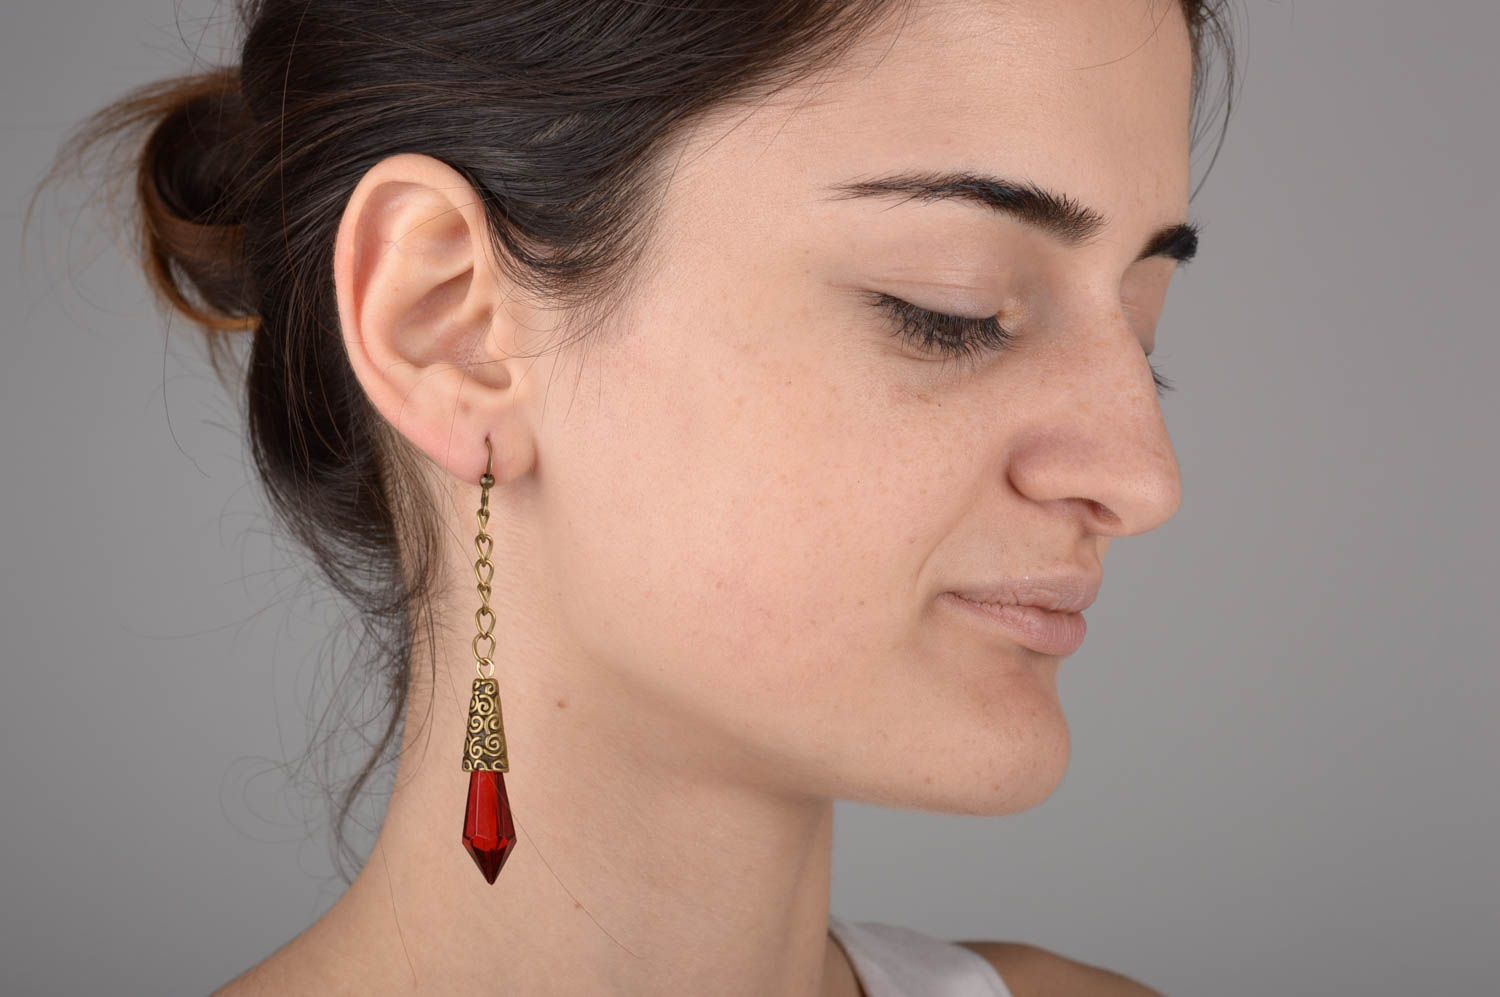 Long beaded earrings stylish handmade earrings female present gift for her photo 5